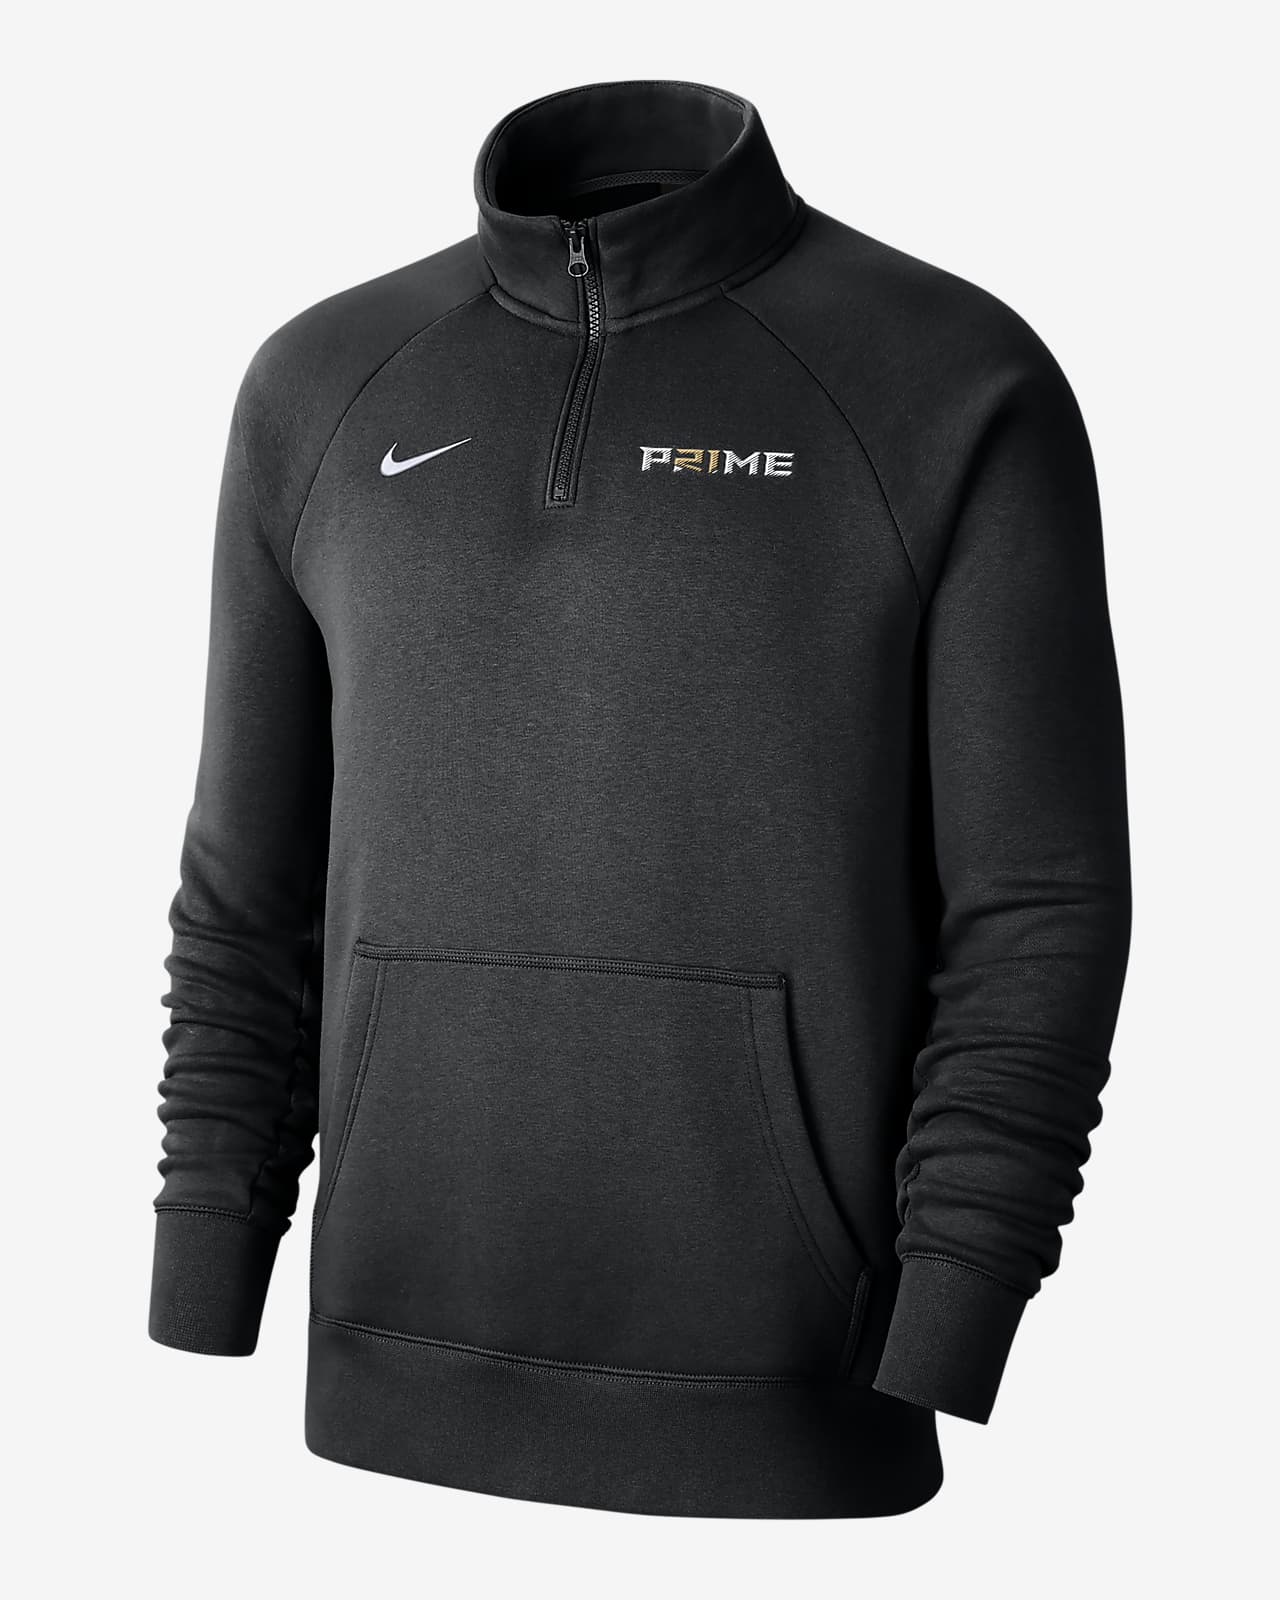 Deion Sanders "P21ME" Club Fleece Men's Nike 1/4-Zip Top